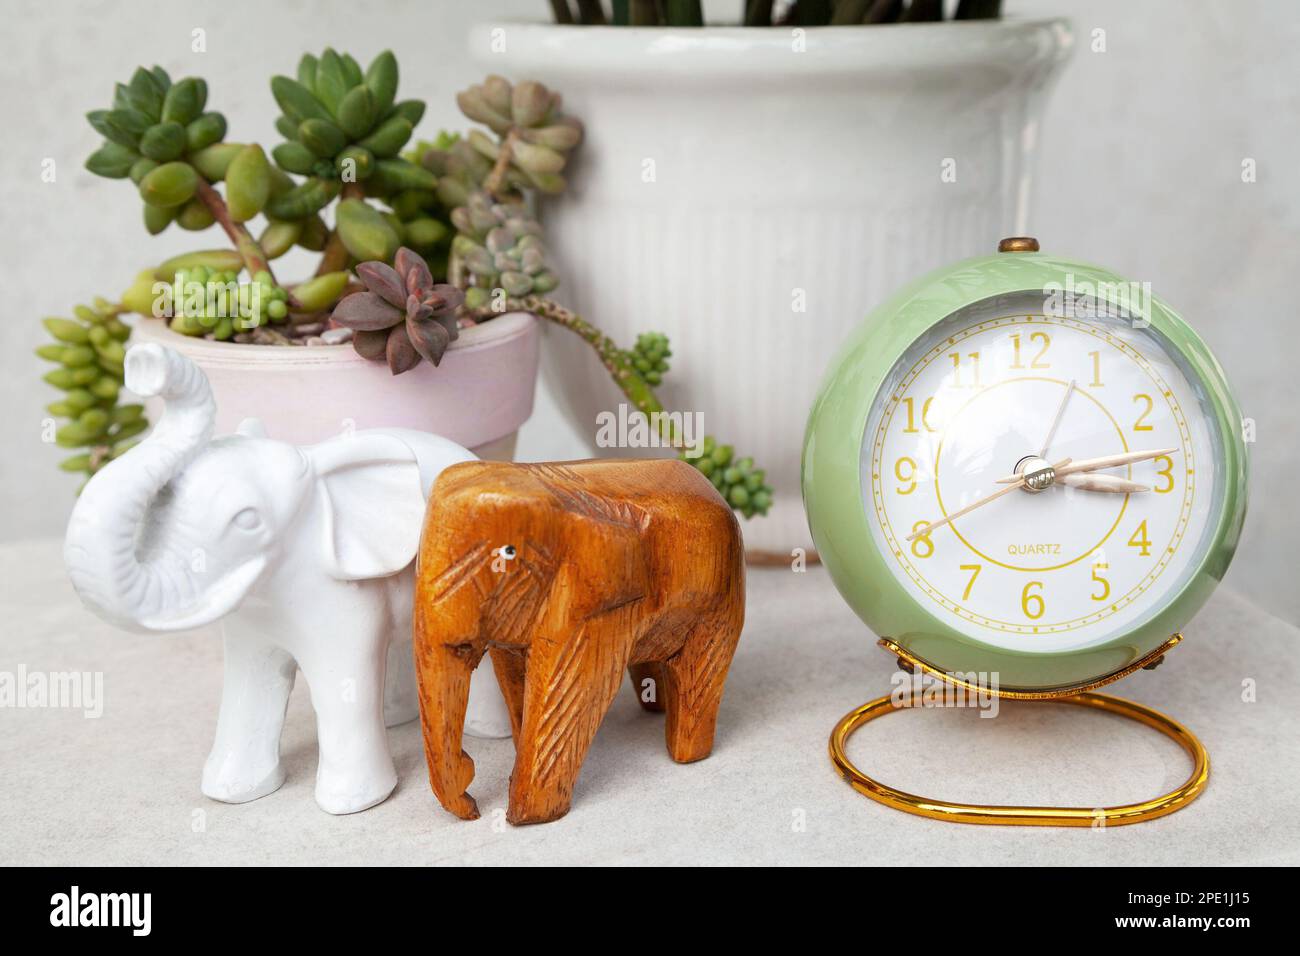 Grüner Wecker im Vintage-Stil, der die Uhrzeit am Nachmittag anzeigt. Stilvolle rund um die Uhr, Elefantenfiguren und saftige Topfpflanzen auf einem Nachttisch Stockfoto